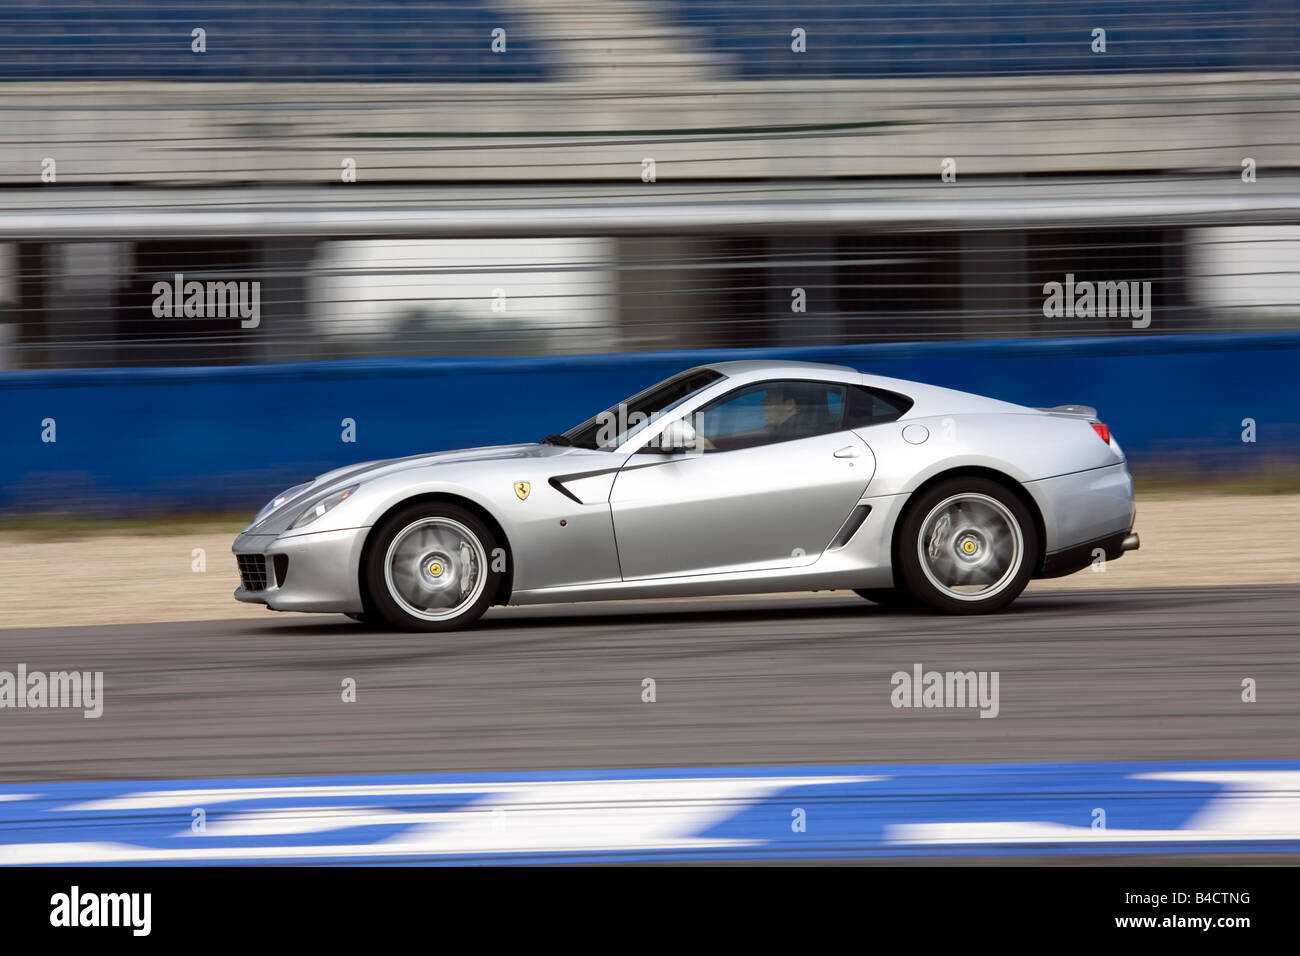 Ferrari 599 GTB Fiorano F1, l'année de modèle 2006, d'argent, la conduite, la vue latérale, test track Banque D'Images